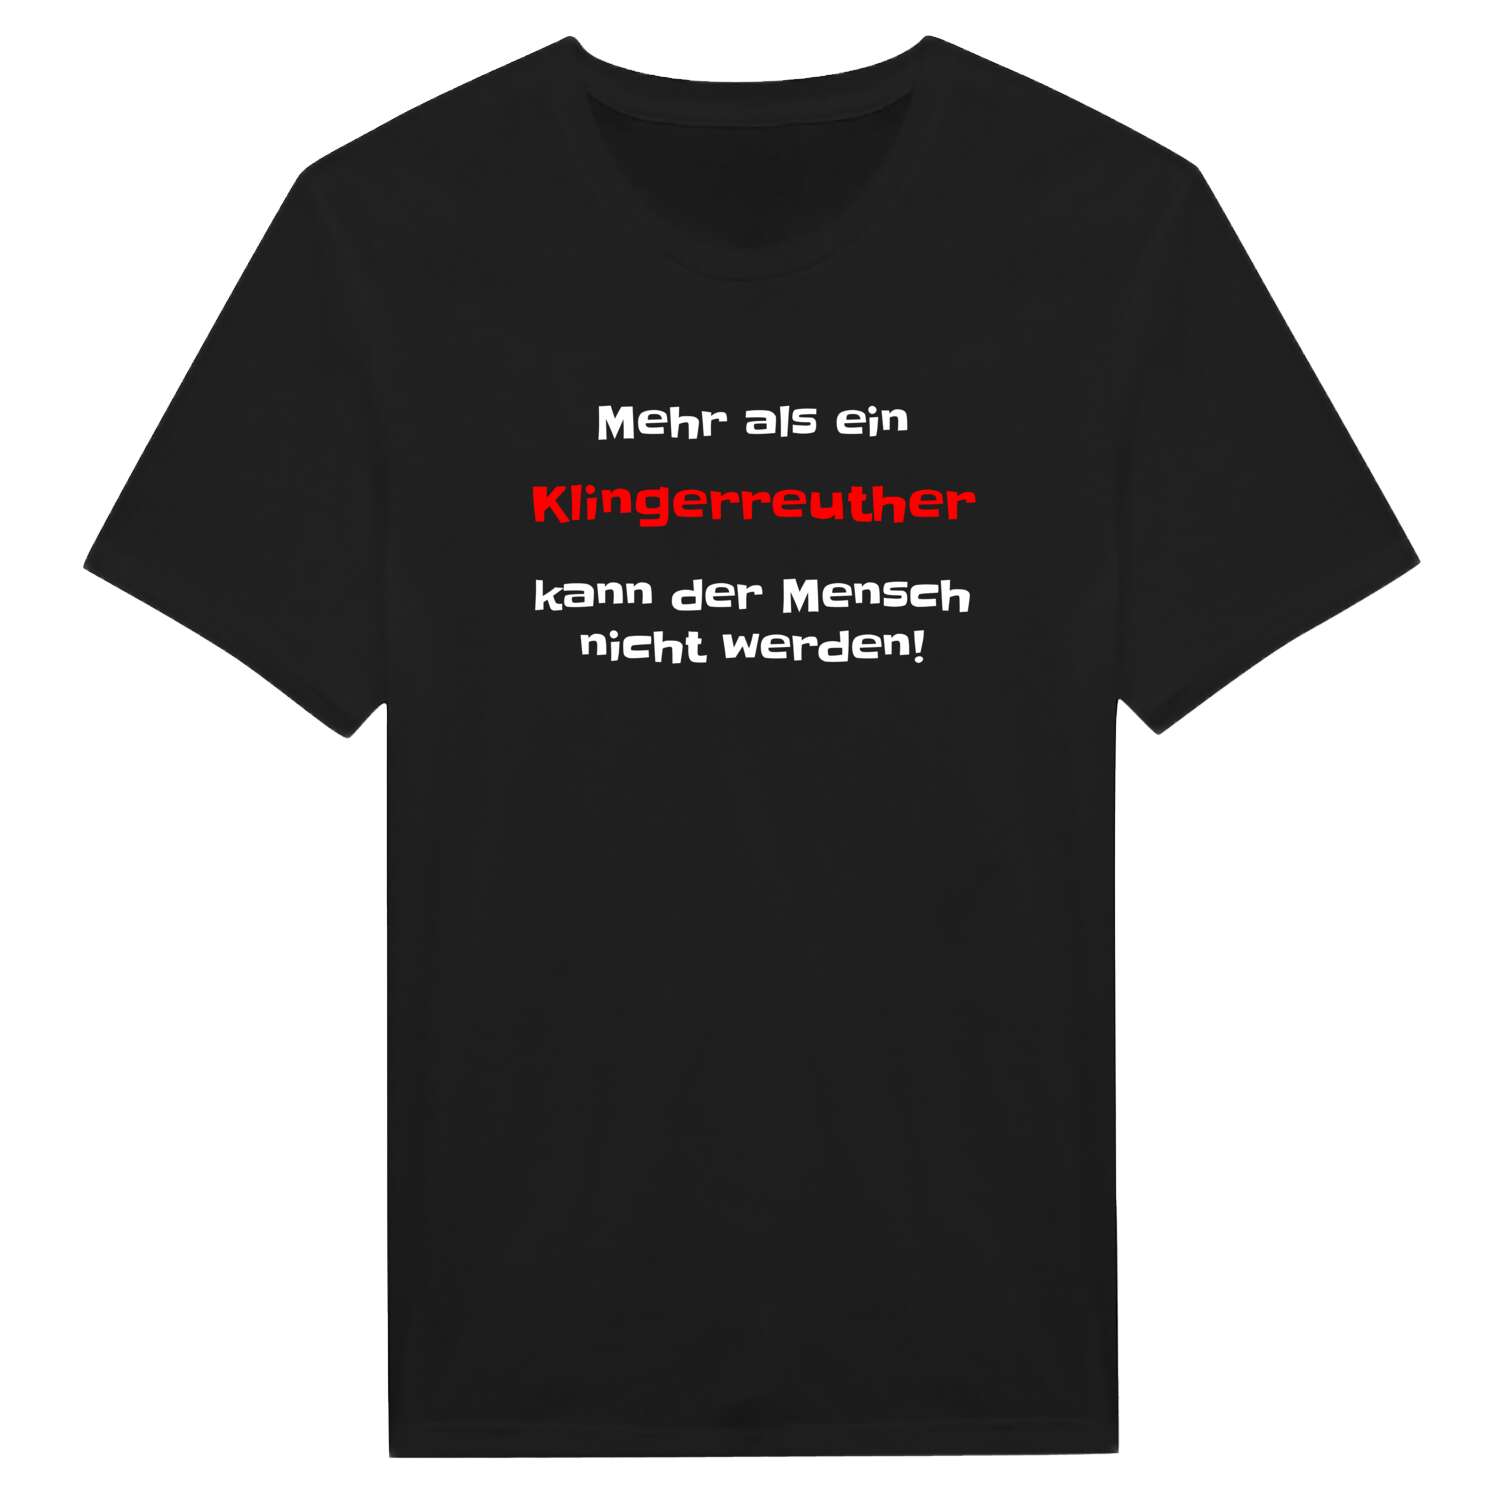 Klingerreuth T-Shirt »Mehr als ein«